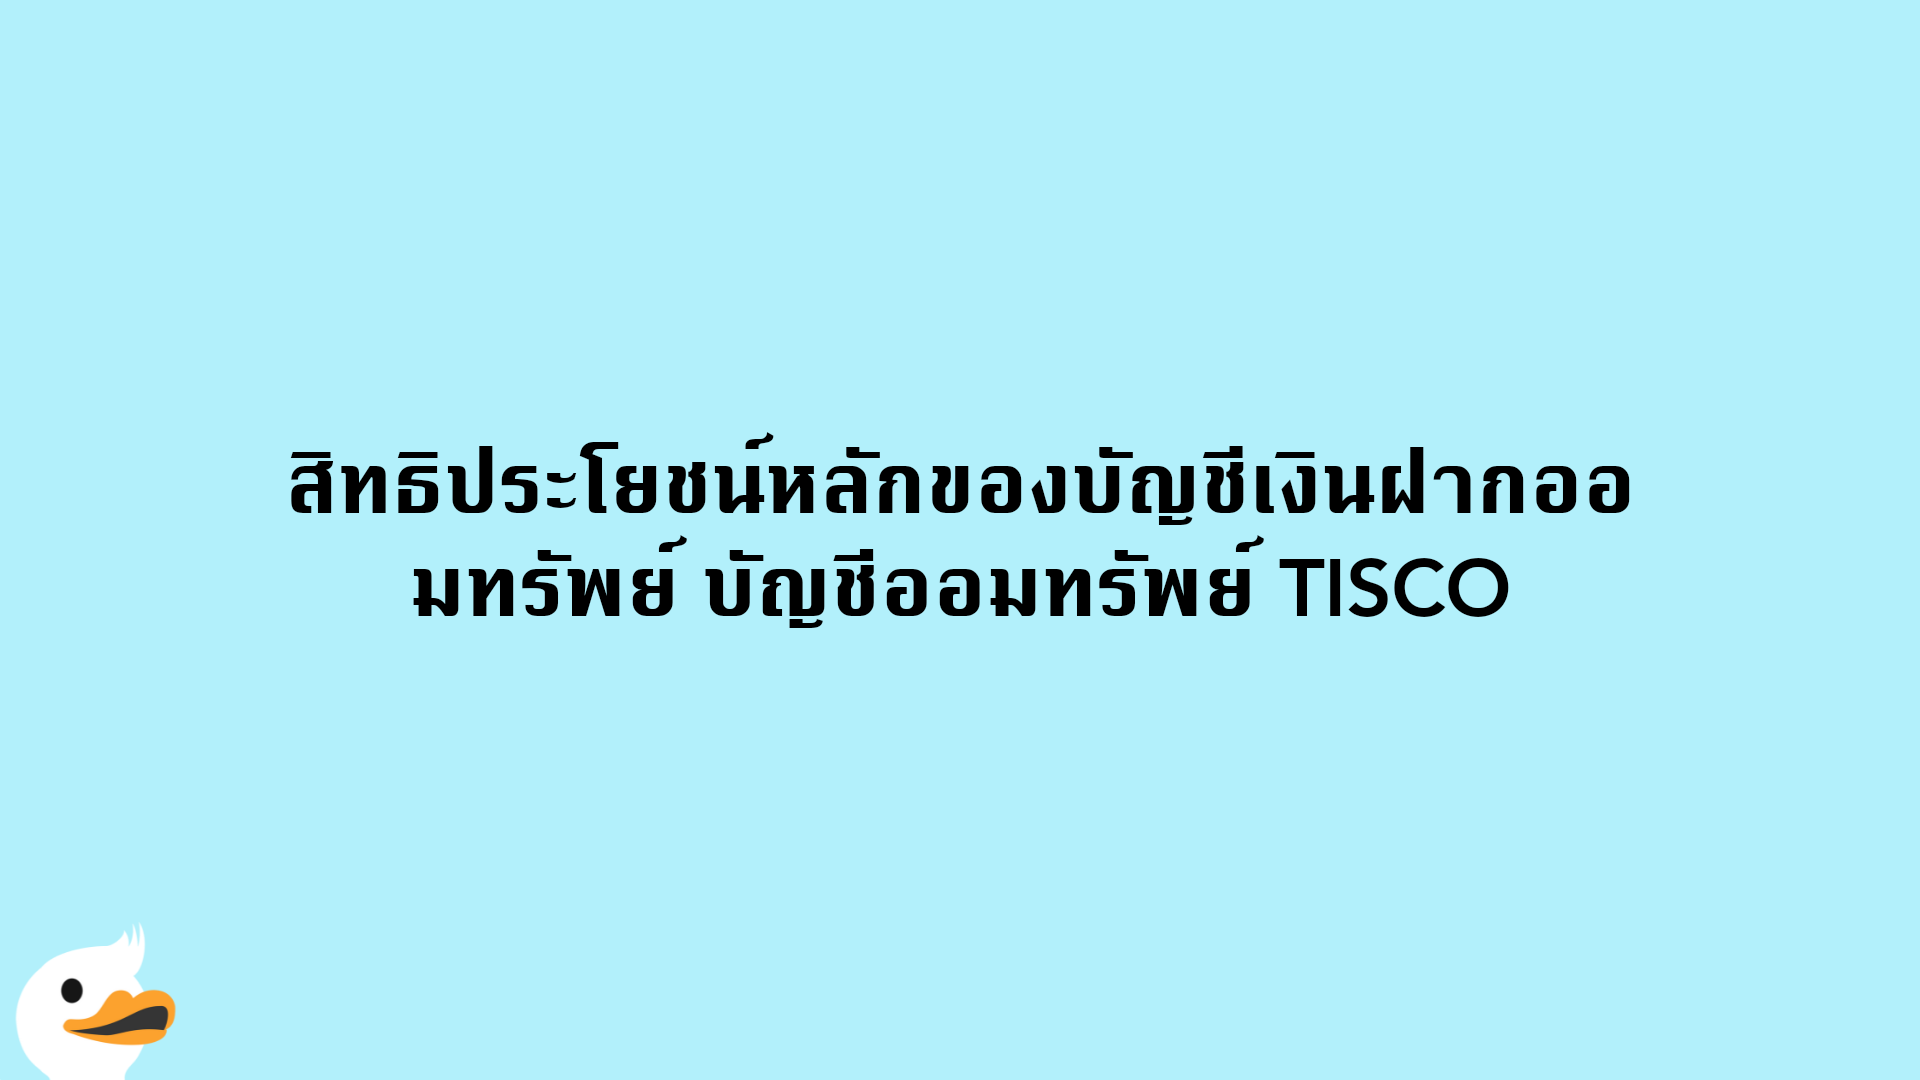 สิทธิประโยชน์หลักของบัญชีเงินฝากออมทรัพย์ บัญชีออมทรัพย์ TISCO